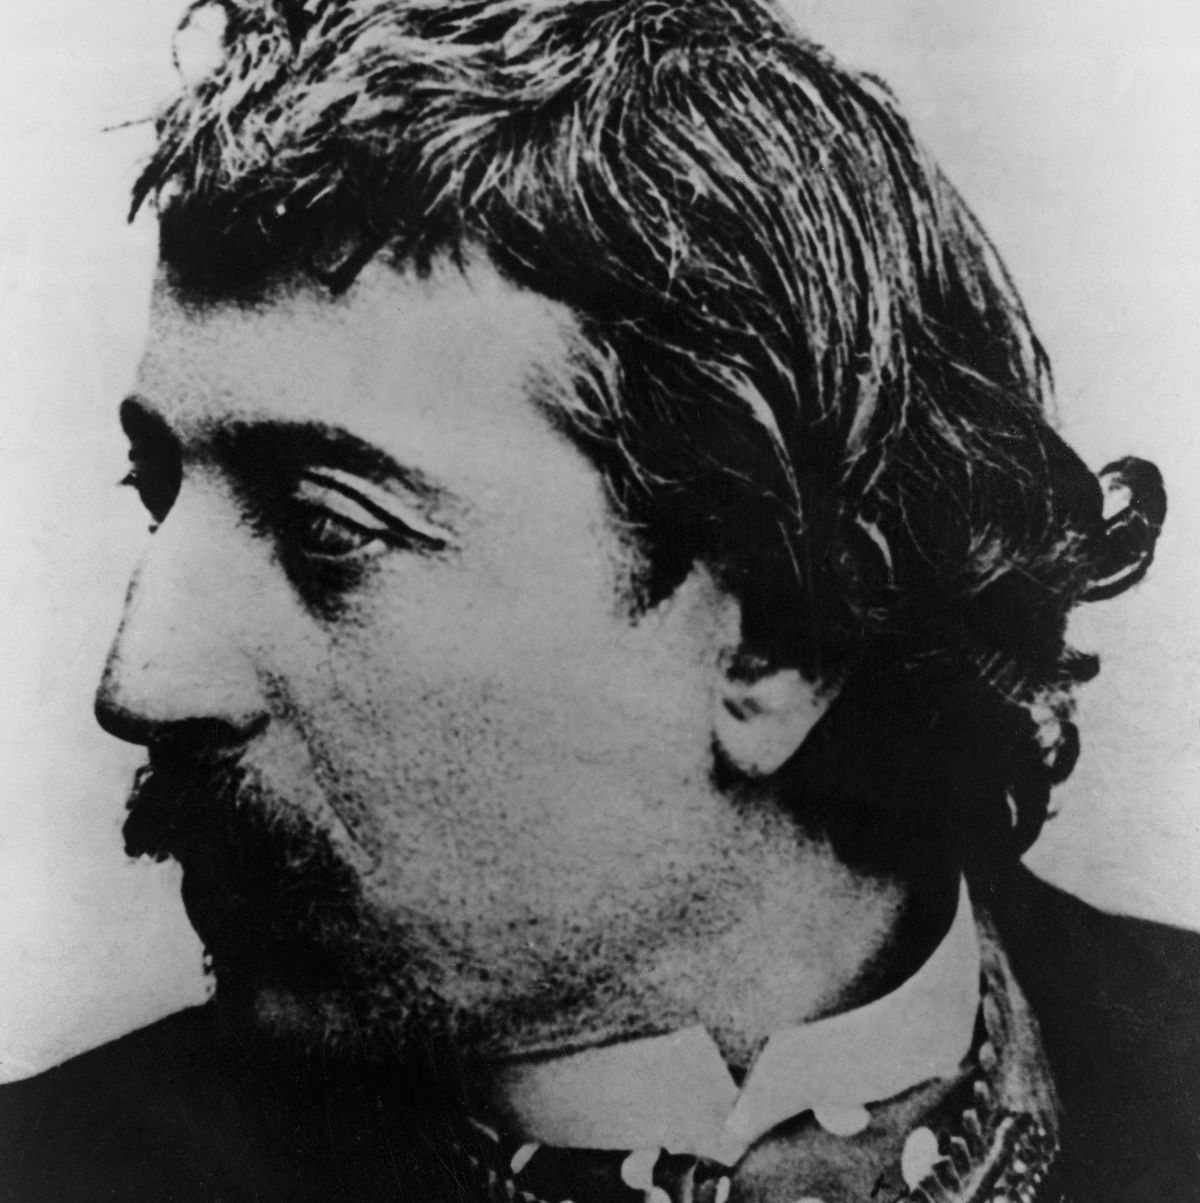 https://www.philob.com/wp-content/uploads/2021/12/Gauguin_portrait.jpeg